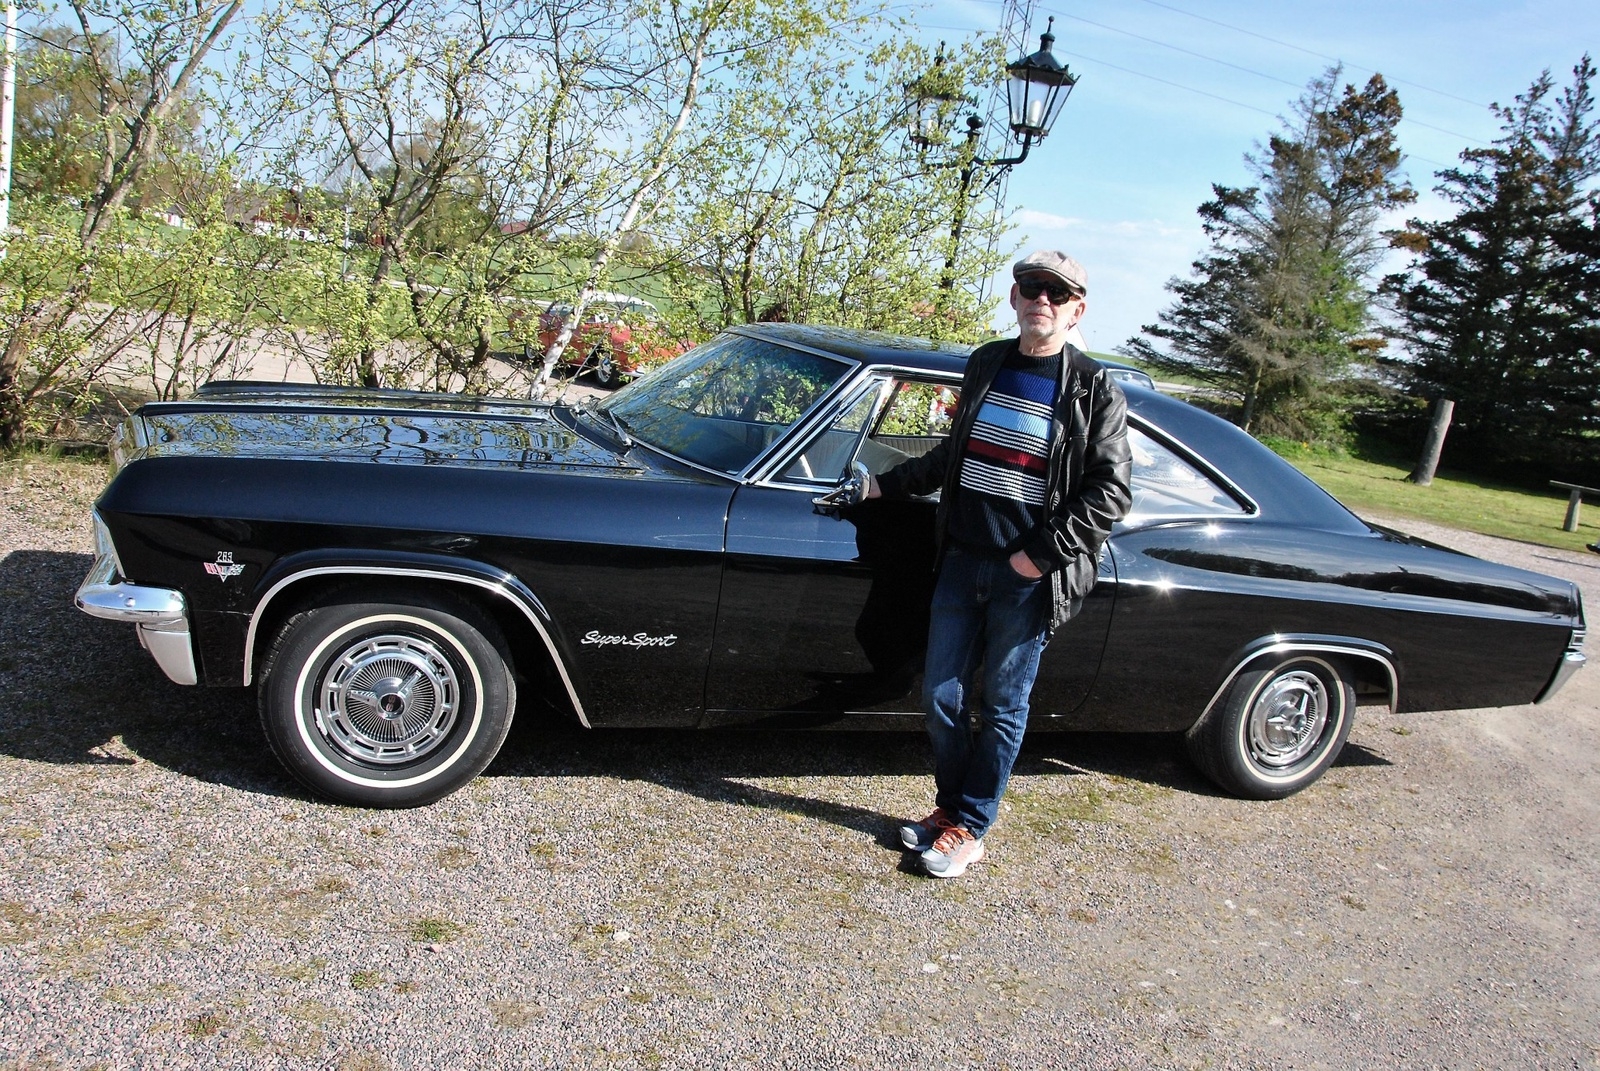 Bertil Jensen från Oxie kom med sin Chevrolet Impala från 1965. - Jag har haft den sedan 2004. Foto: Caroline Stenbäck